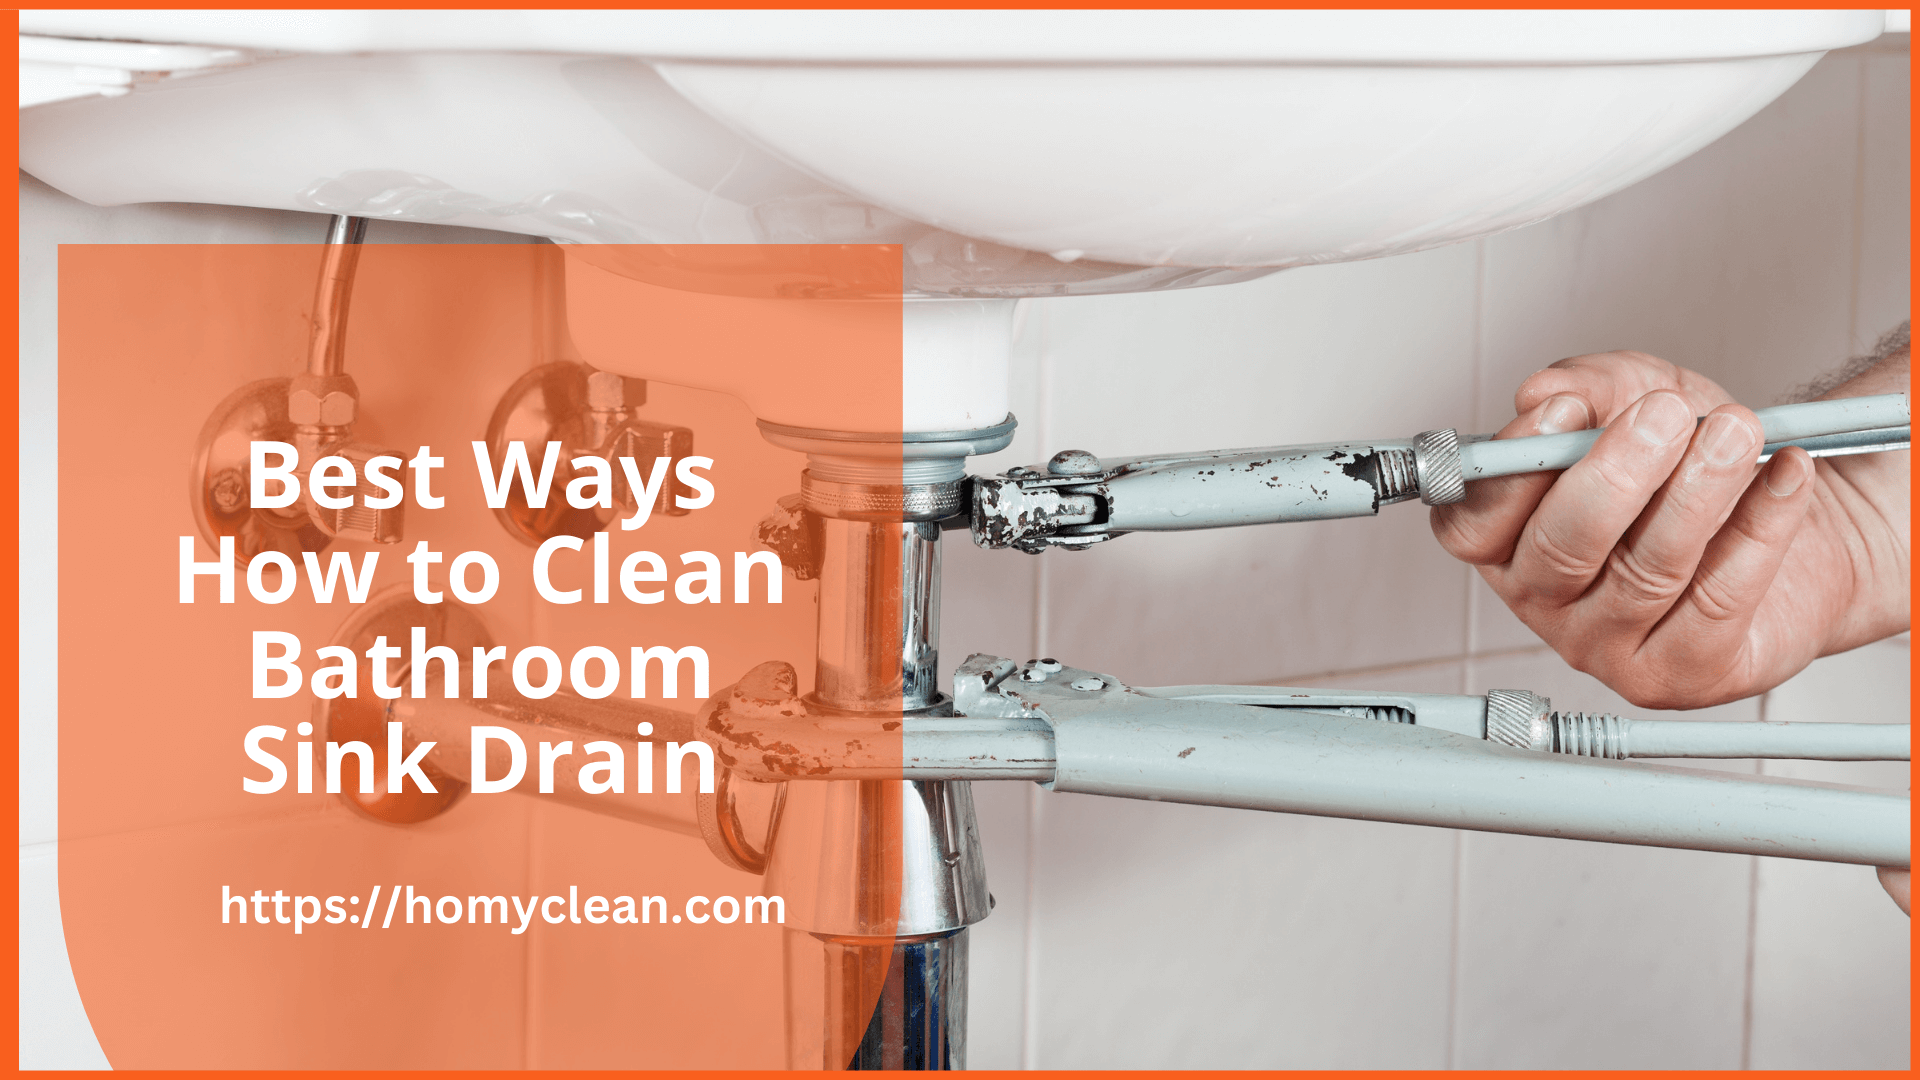 air gun to clean bathroom sink drain